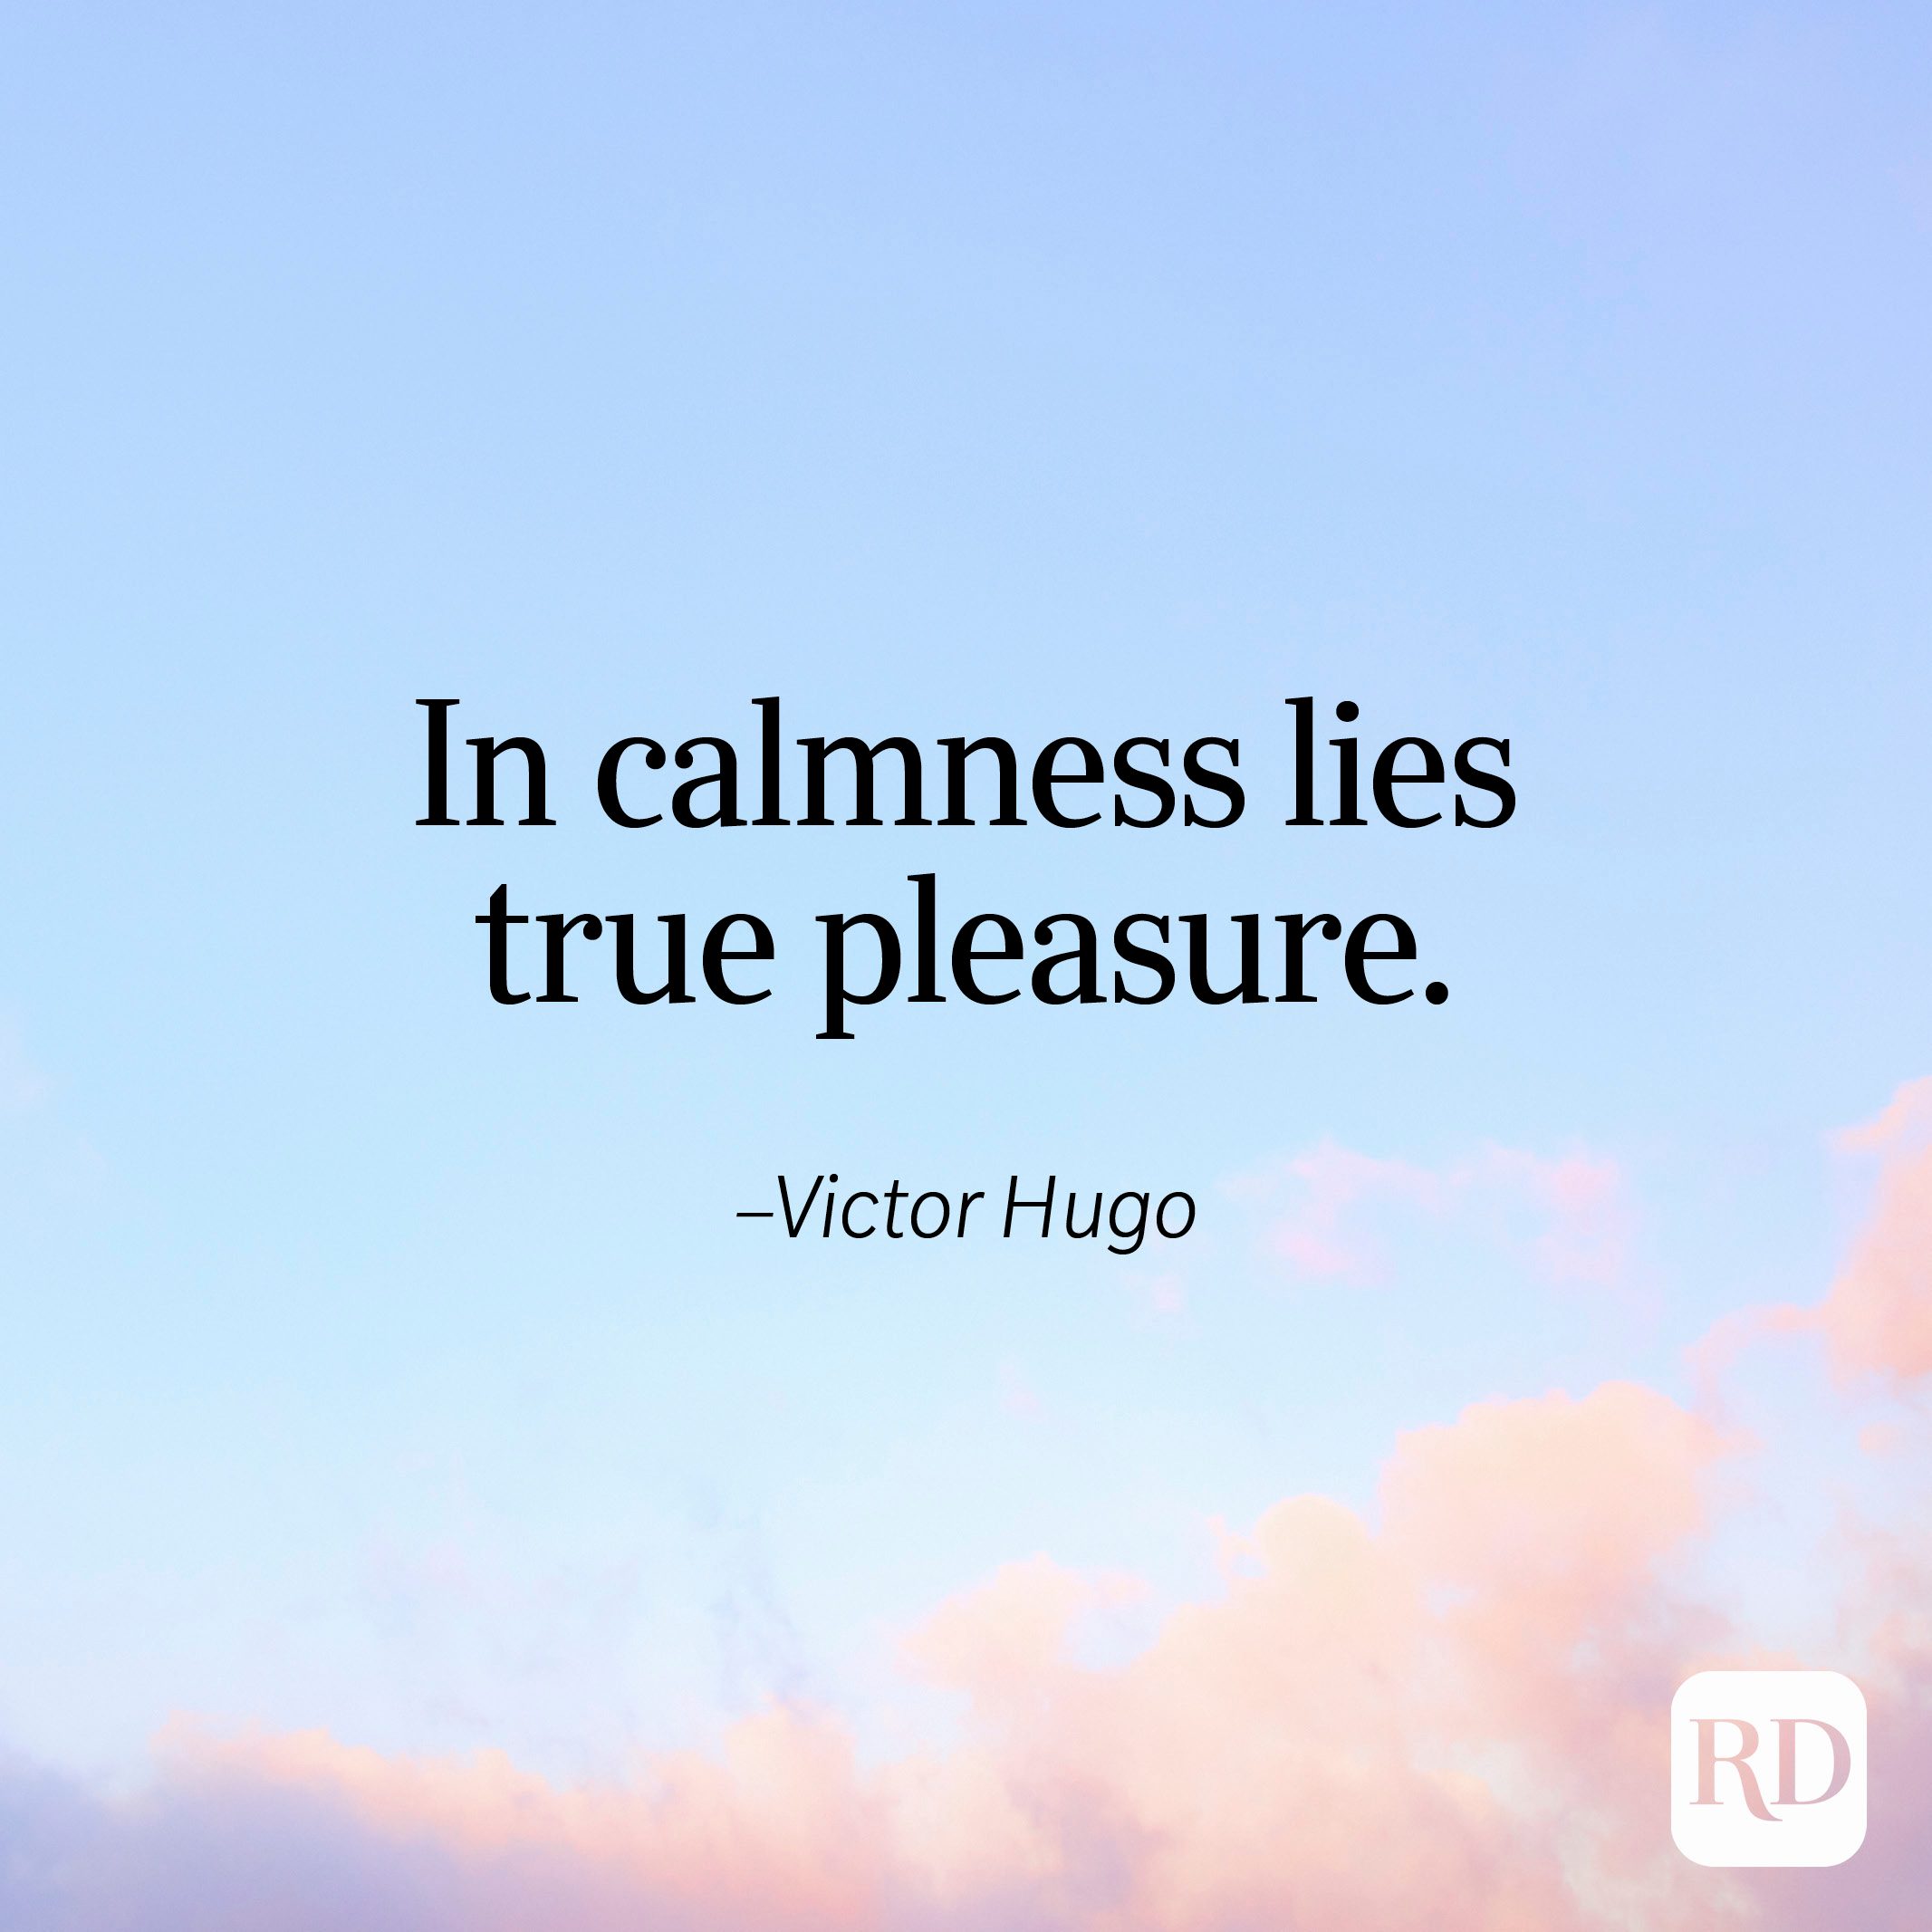 "In calmness lies true pleasure." —Victor Hugo